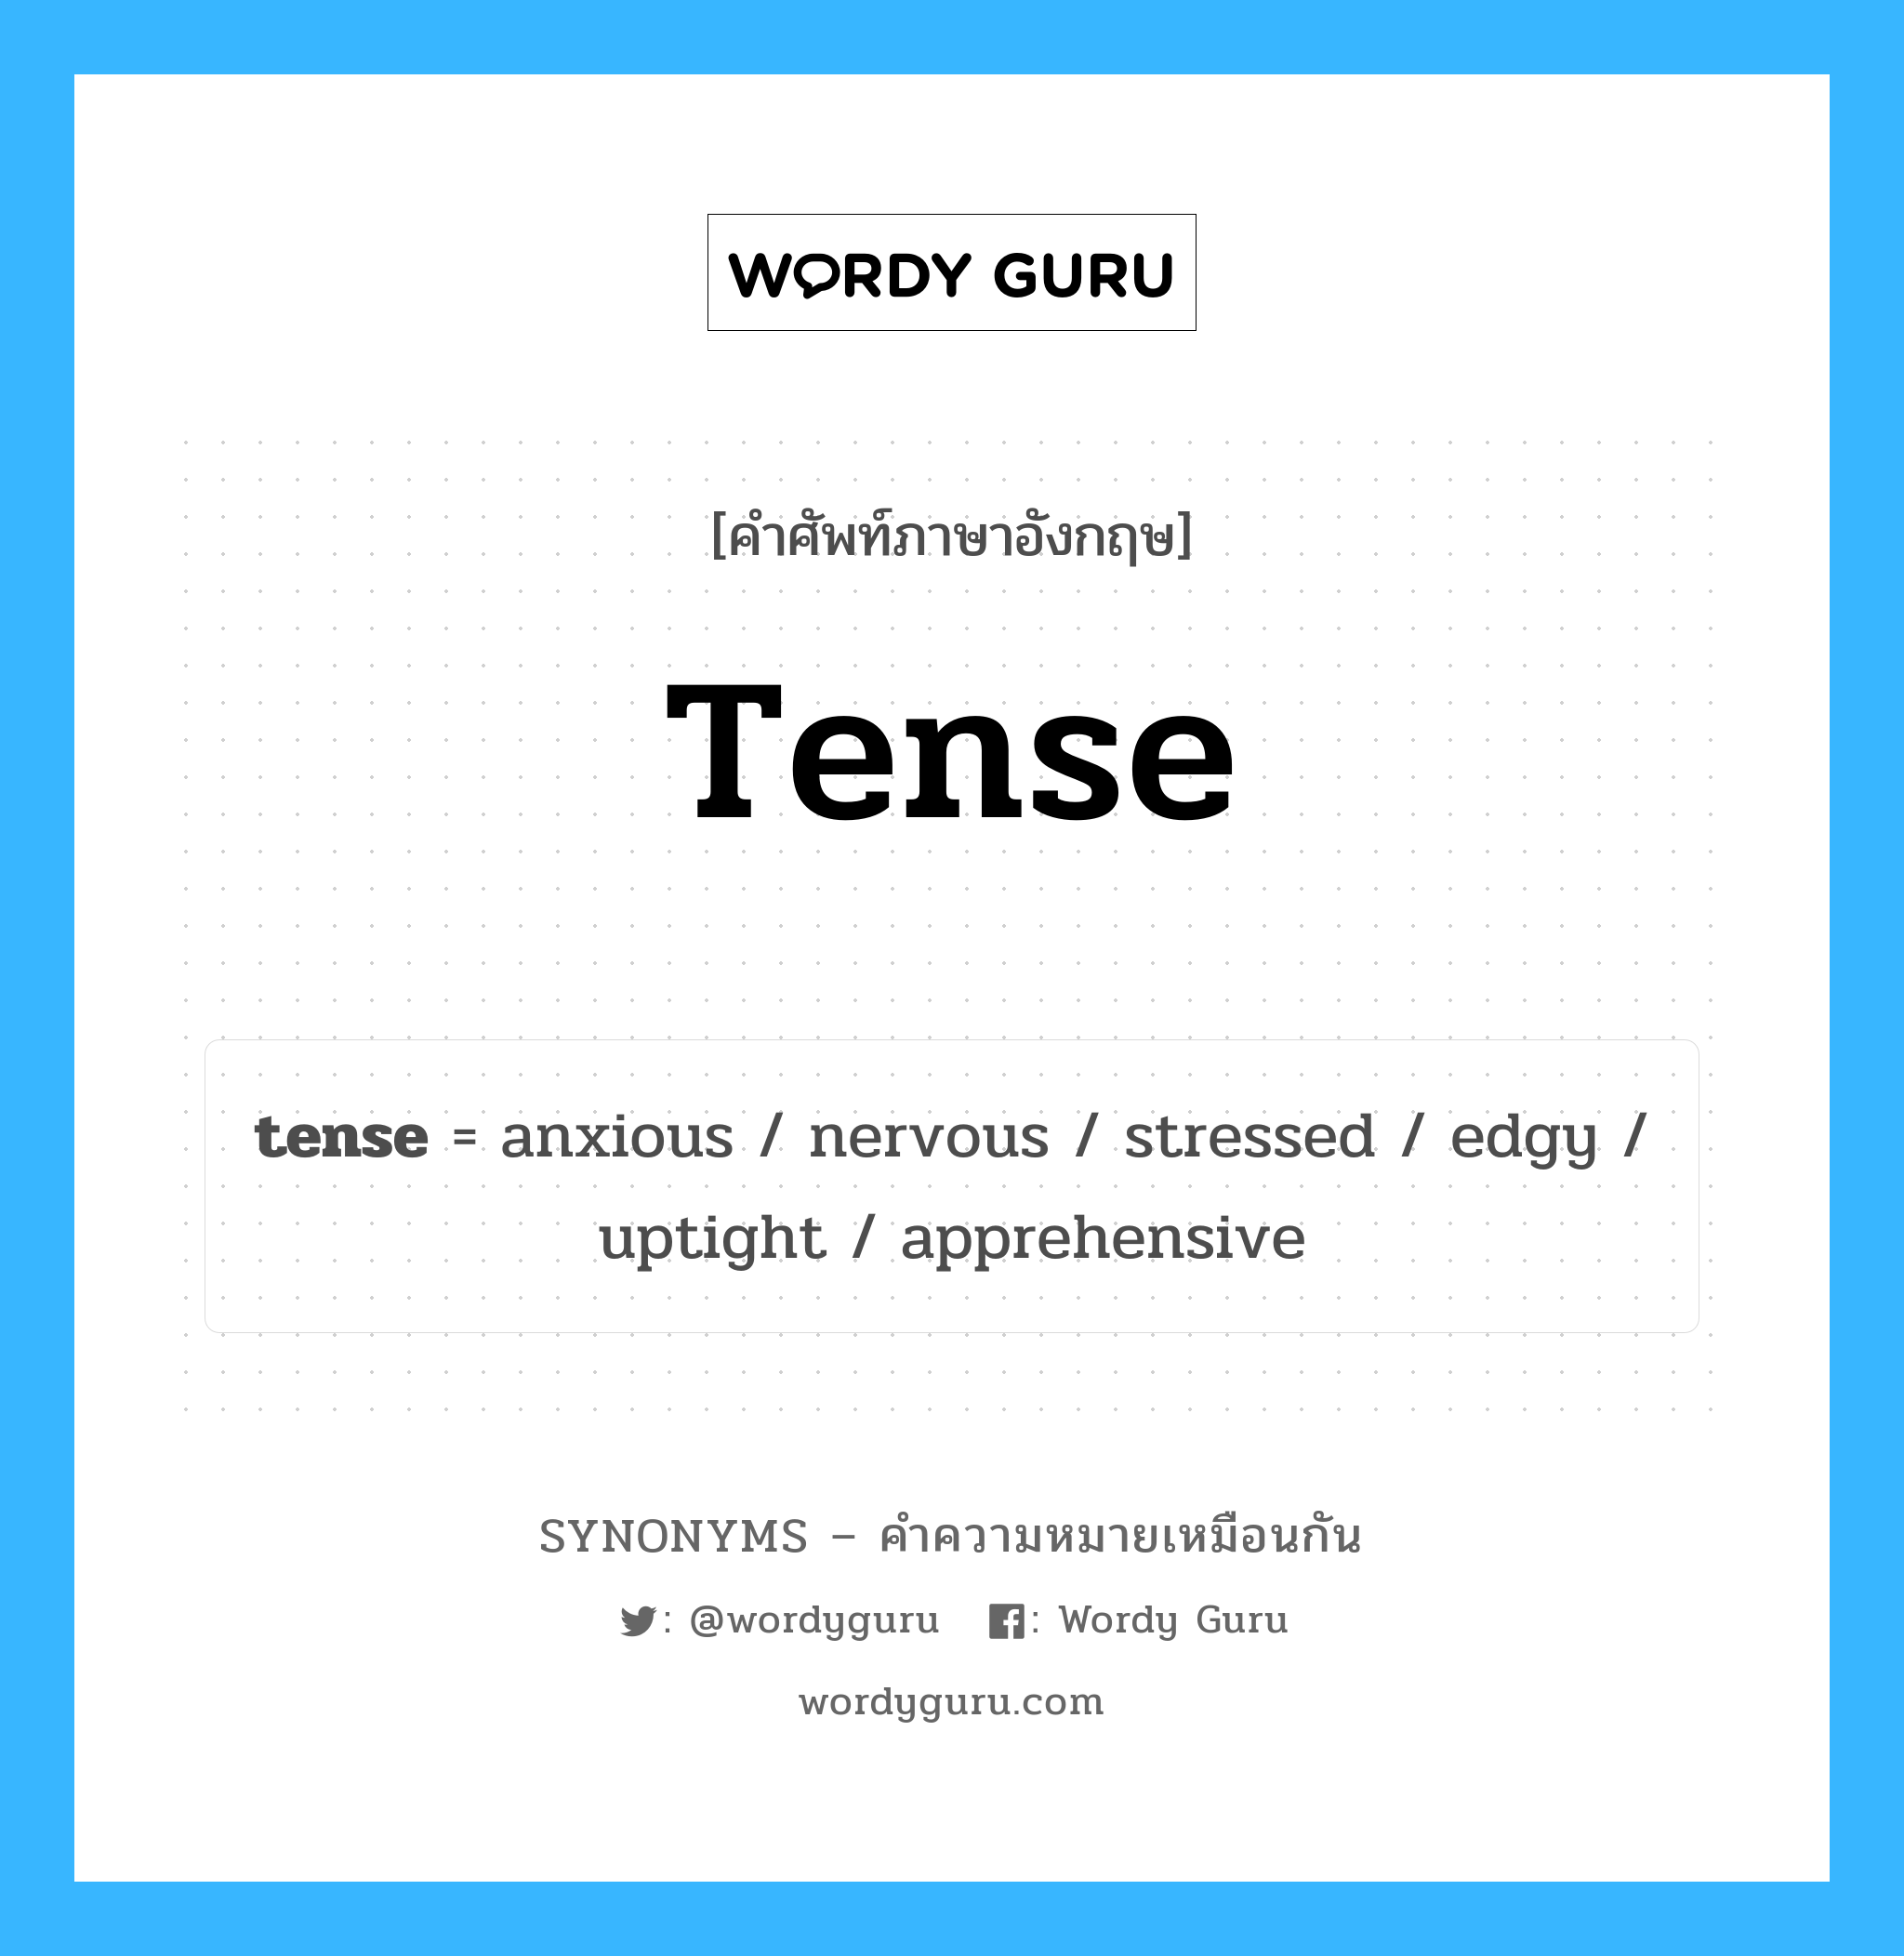 tense เป็นหนึ่งใน nervous และมีคำอื่น ๆ อีกดังนี้, คำศัพท์ภาษาอังกฤษ tense ความหมายคล้ายกันกับ nervous แปลว่า ประสาท หมวด nervous